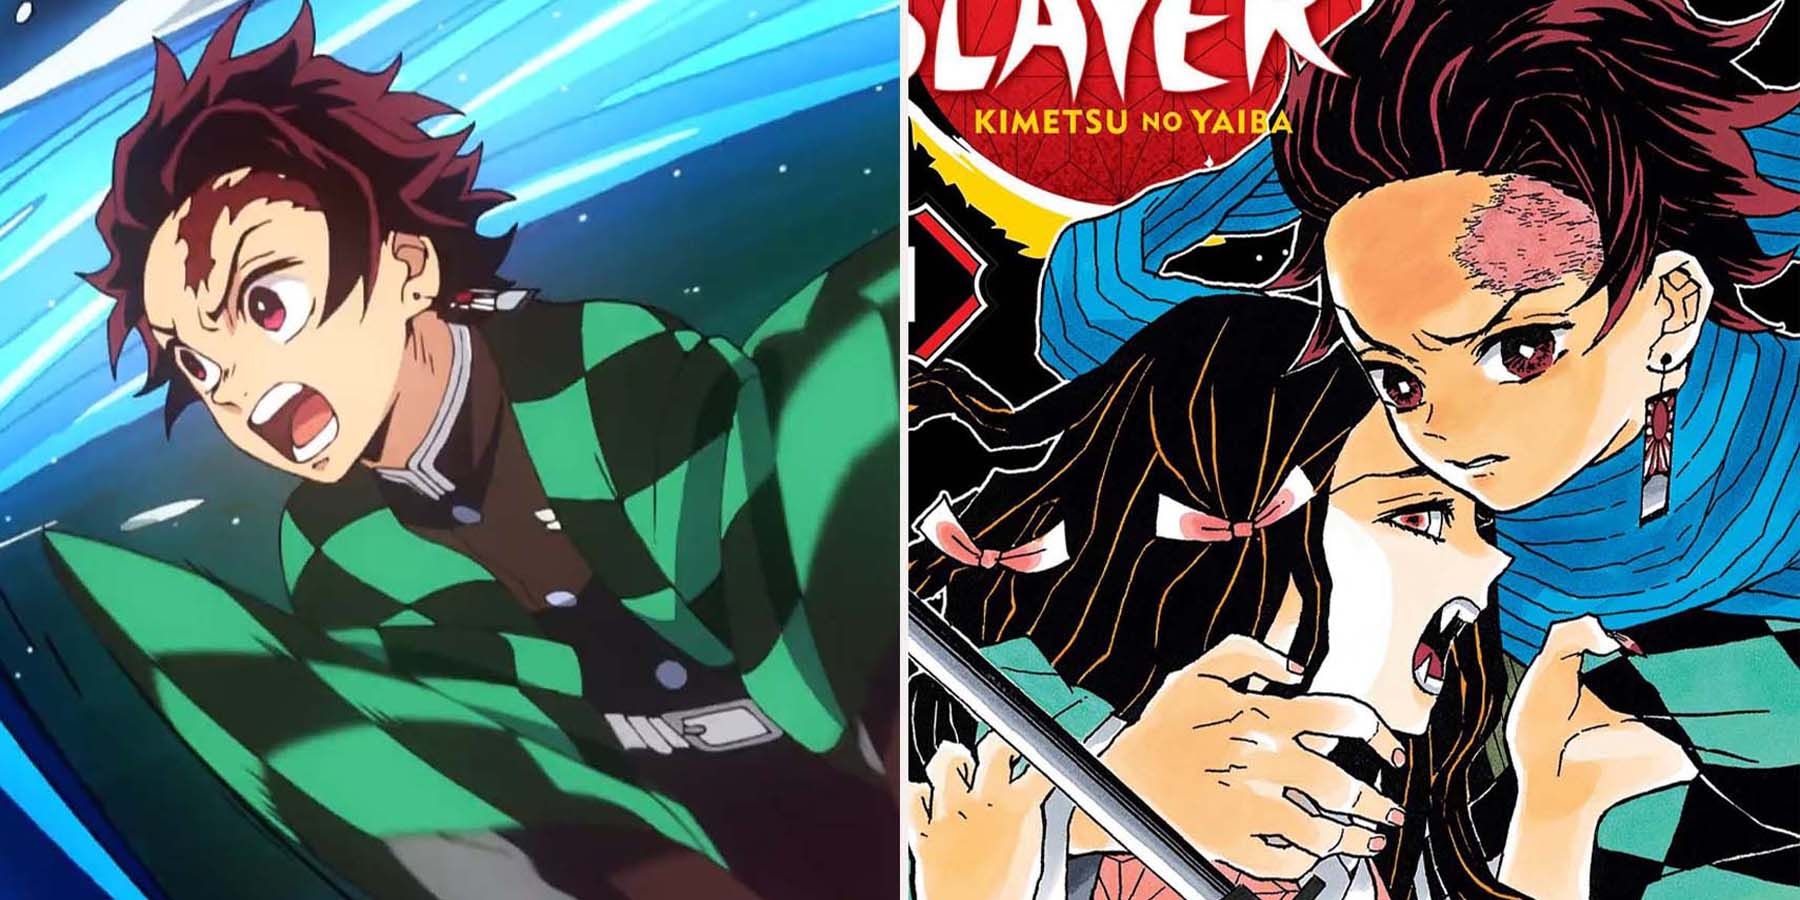 Demon Slayer manga and anime